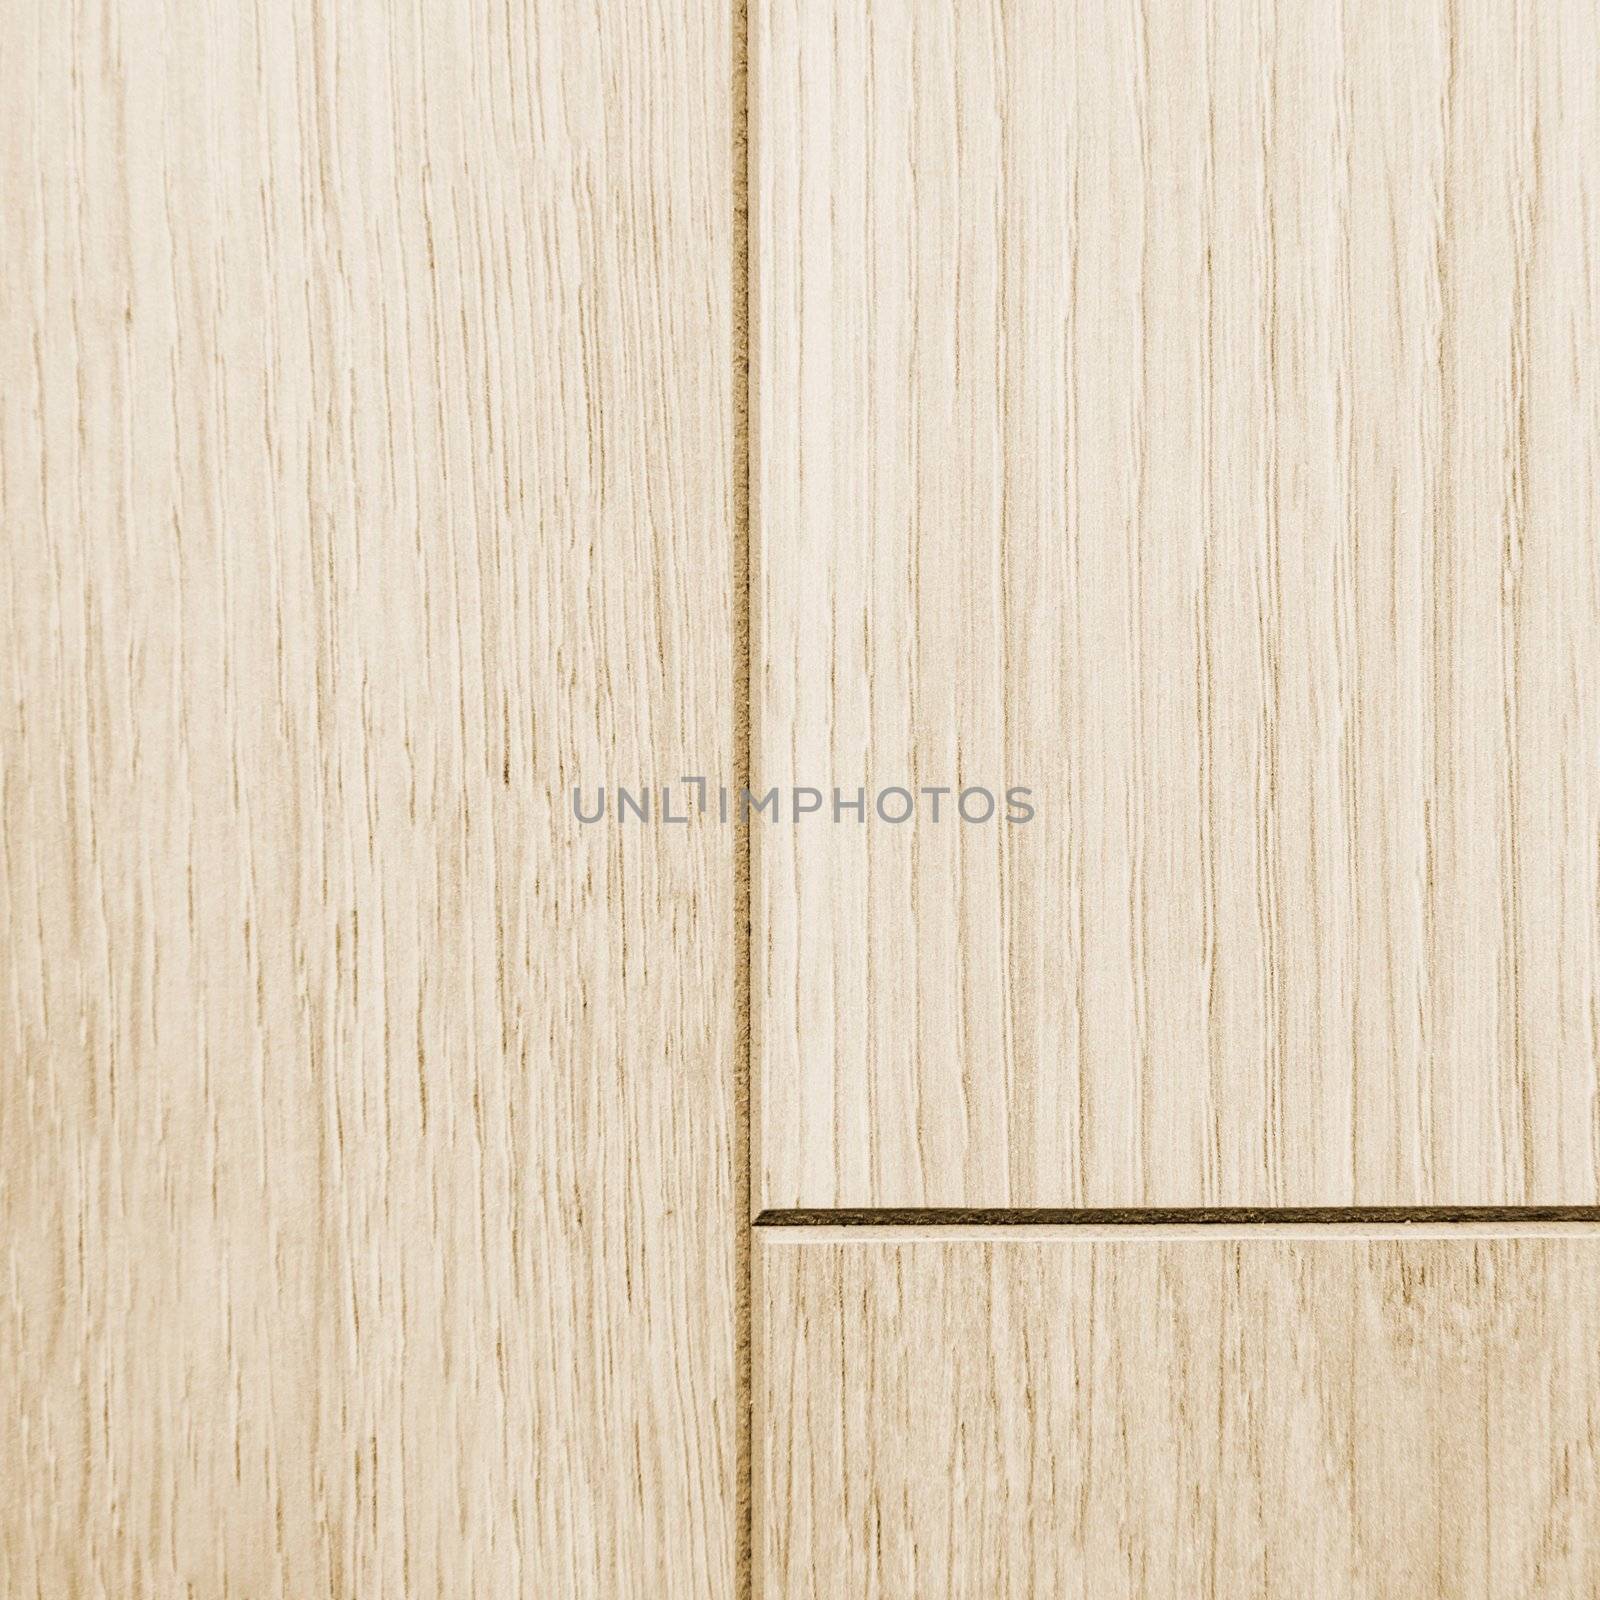 Wooden texture, floor panel